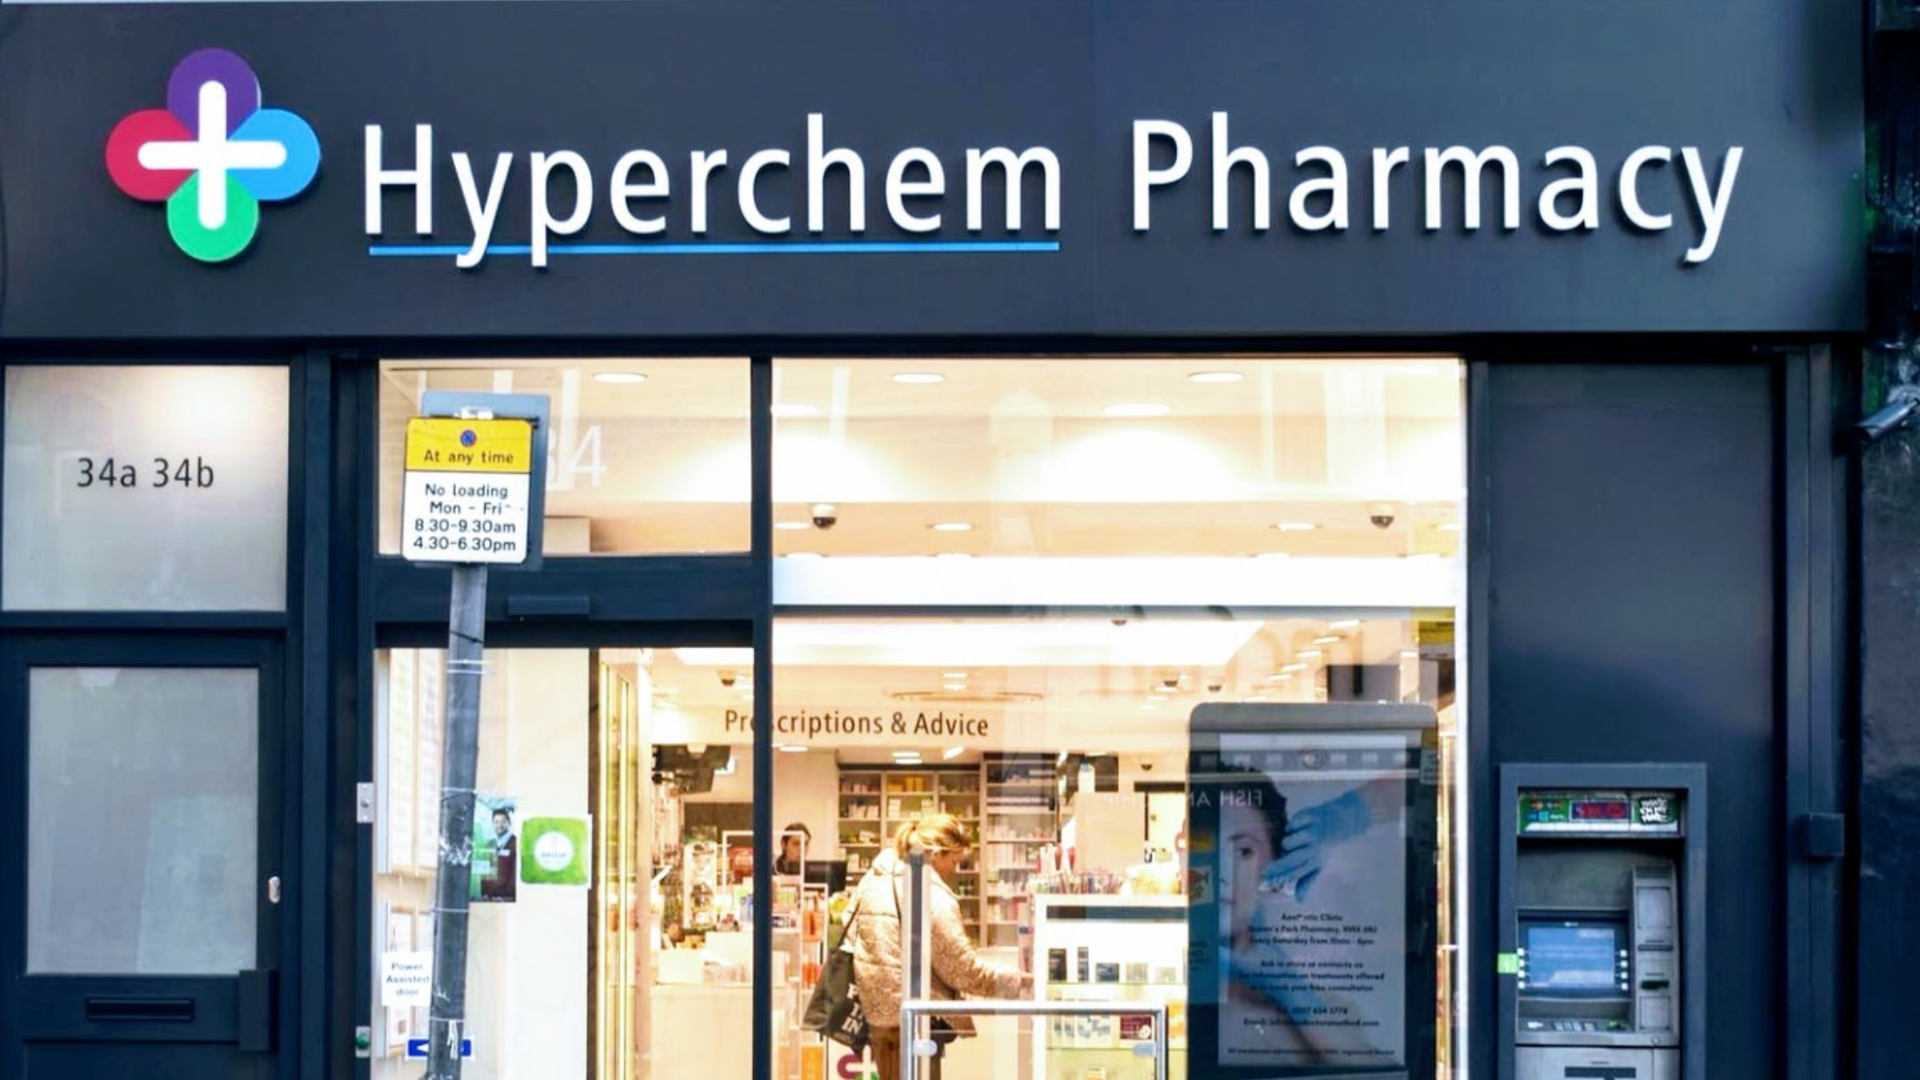 Hyperchem Pharmacy